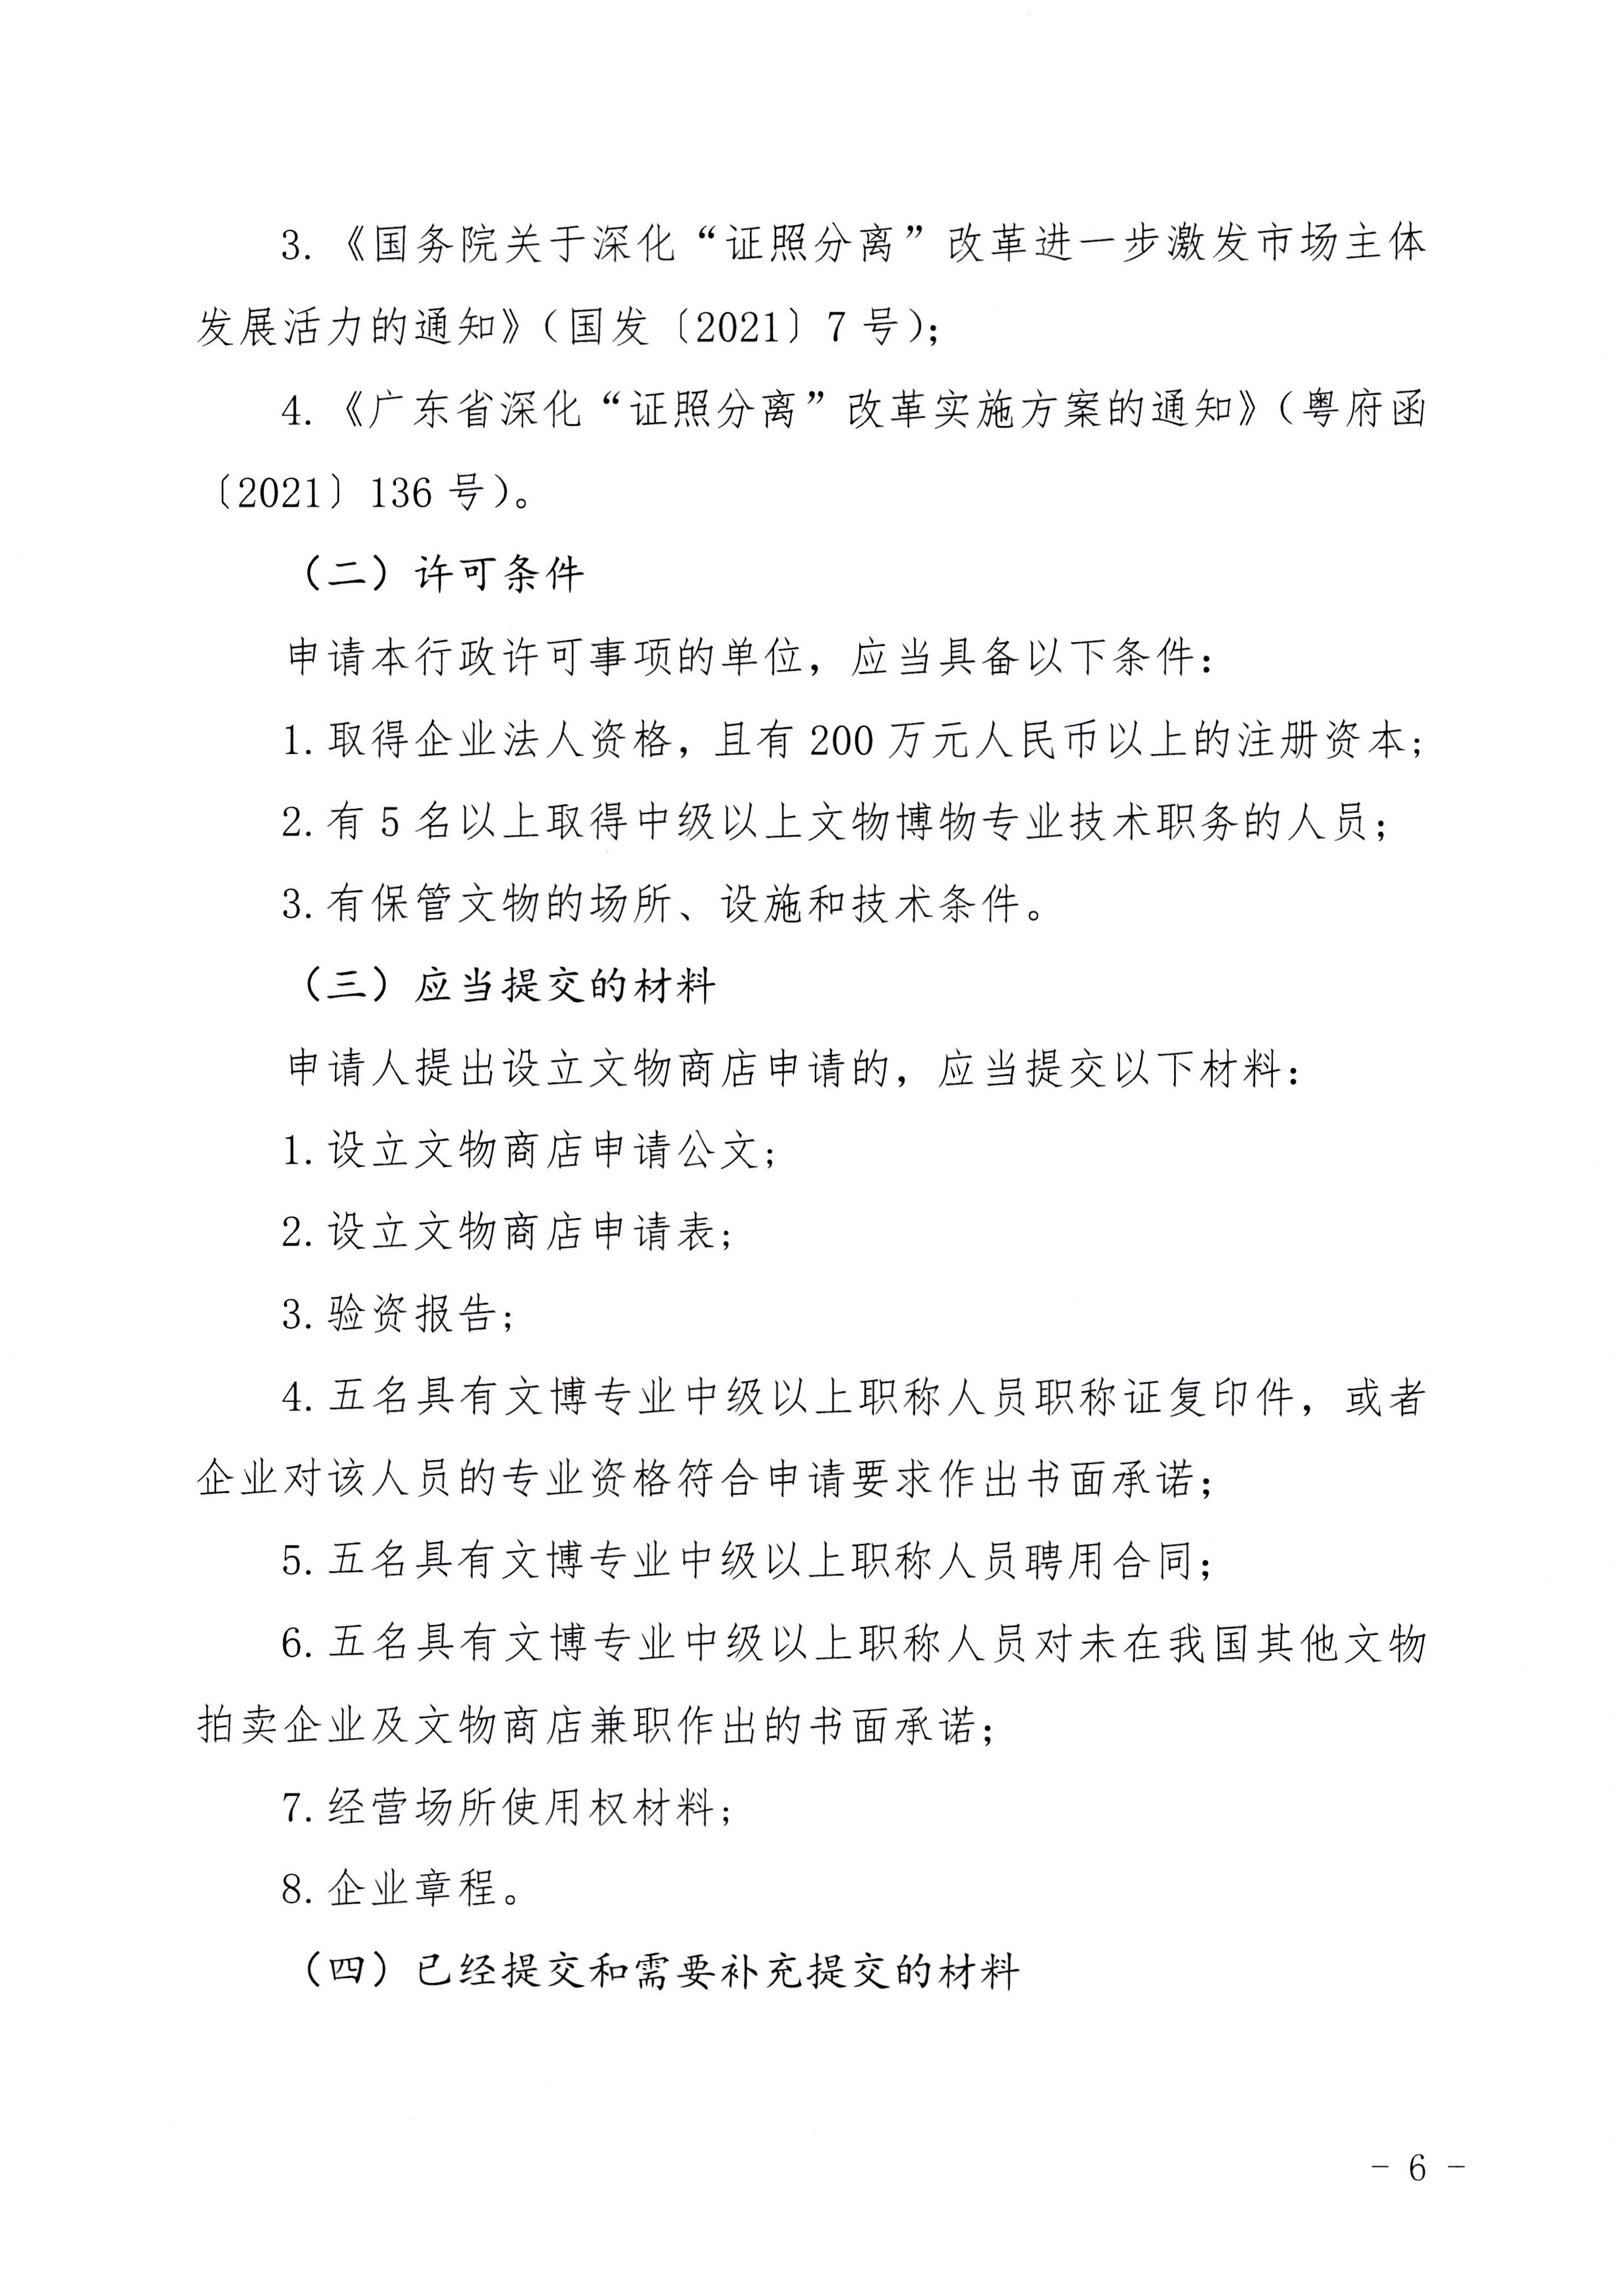 广东省文化和旅游厅印发证照分离改革实施方案的通知_页面_52.jpg